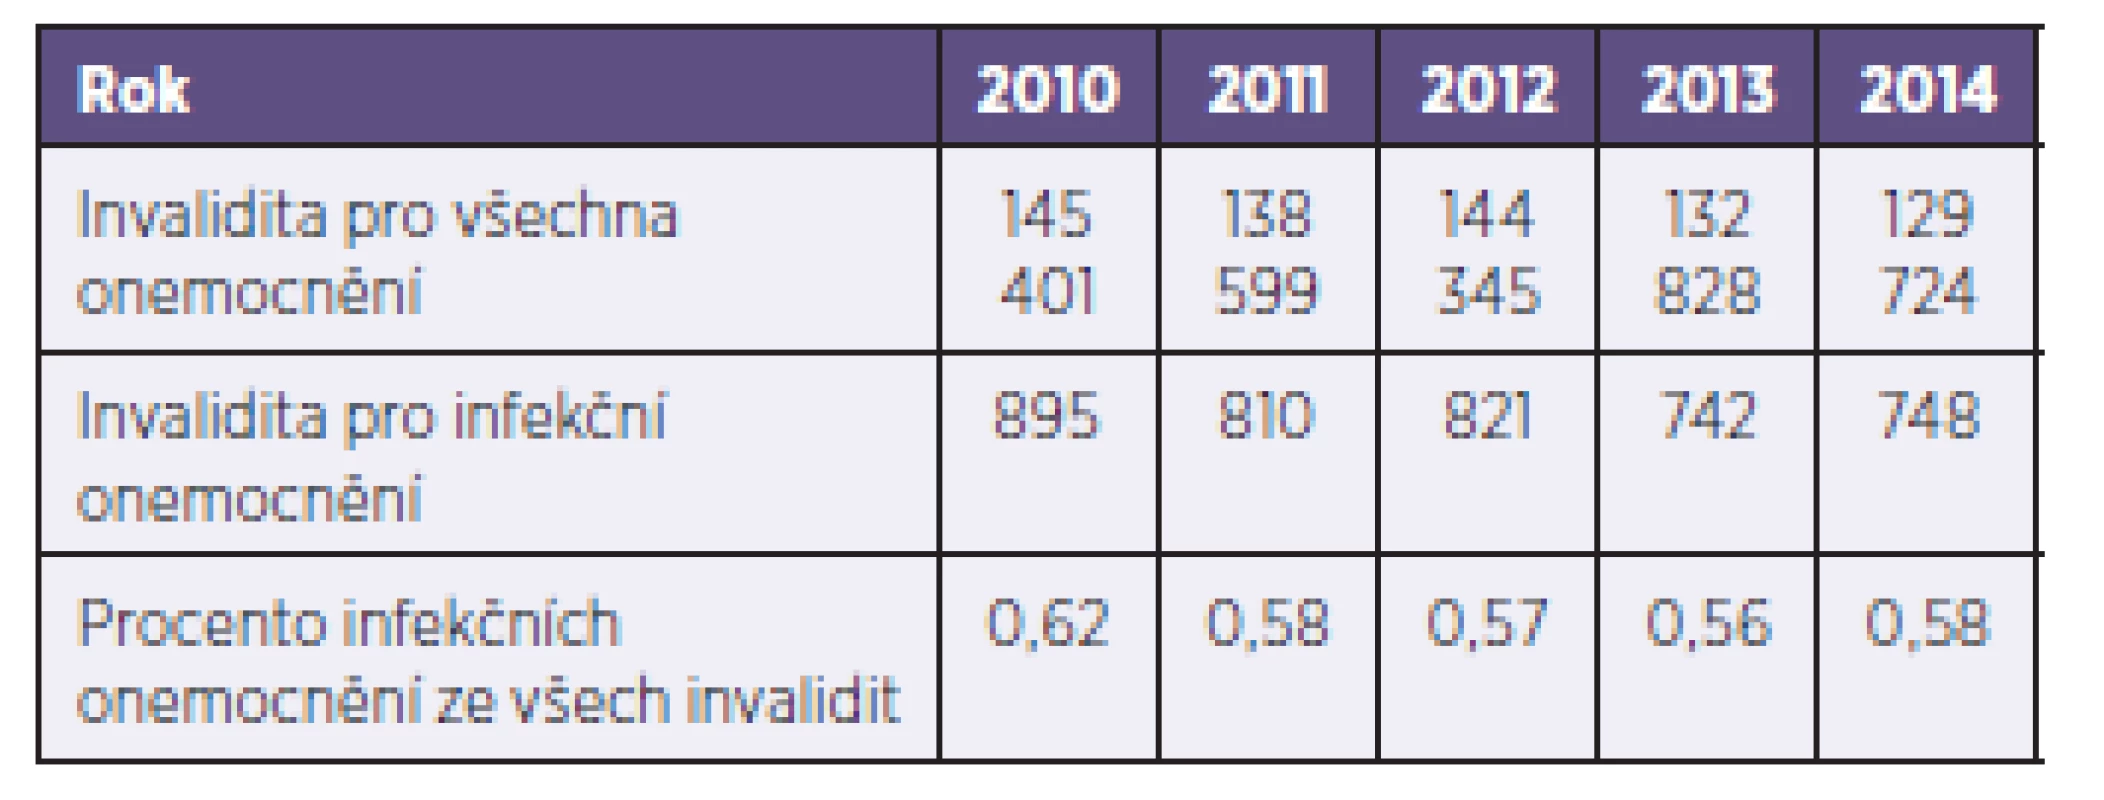 Počet invalidit pro všechna onemocnění a pro infekční onemocnění za období 2010–2014
Table 3. Cases of invalidity from all causes and as a result of infectious disease in 2010–2014